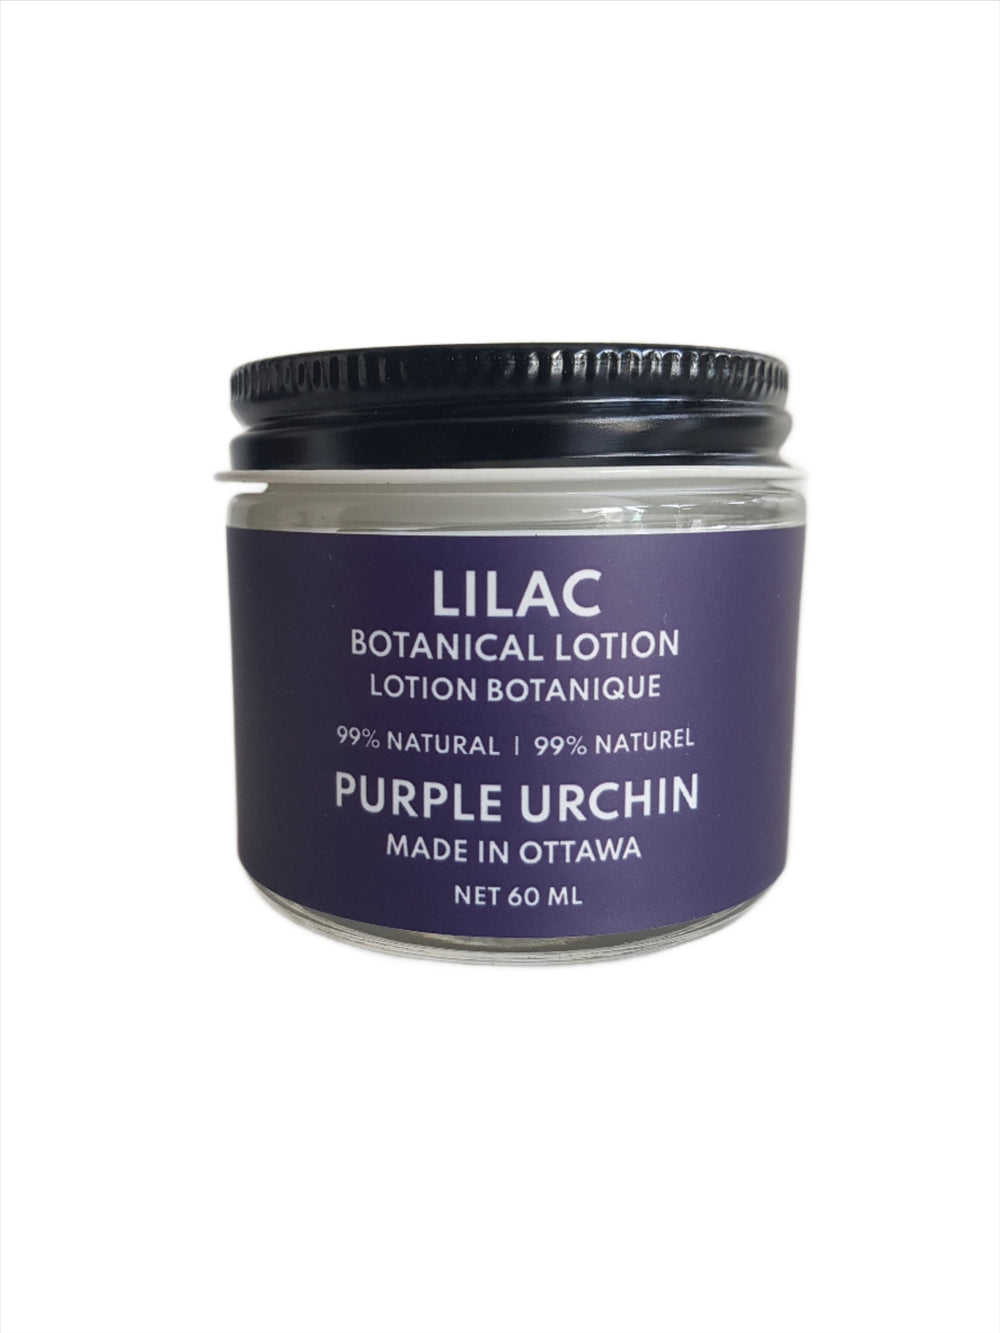 Lilac Botanical Lotion